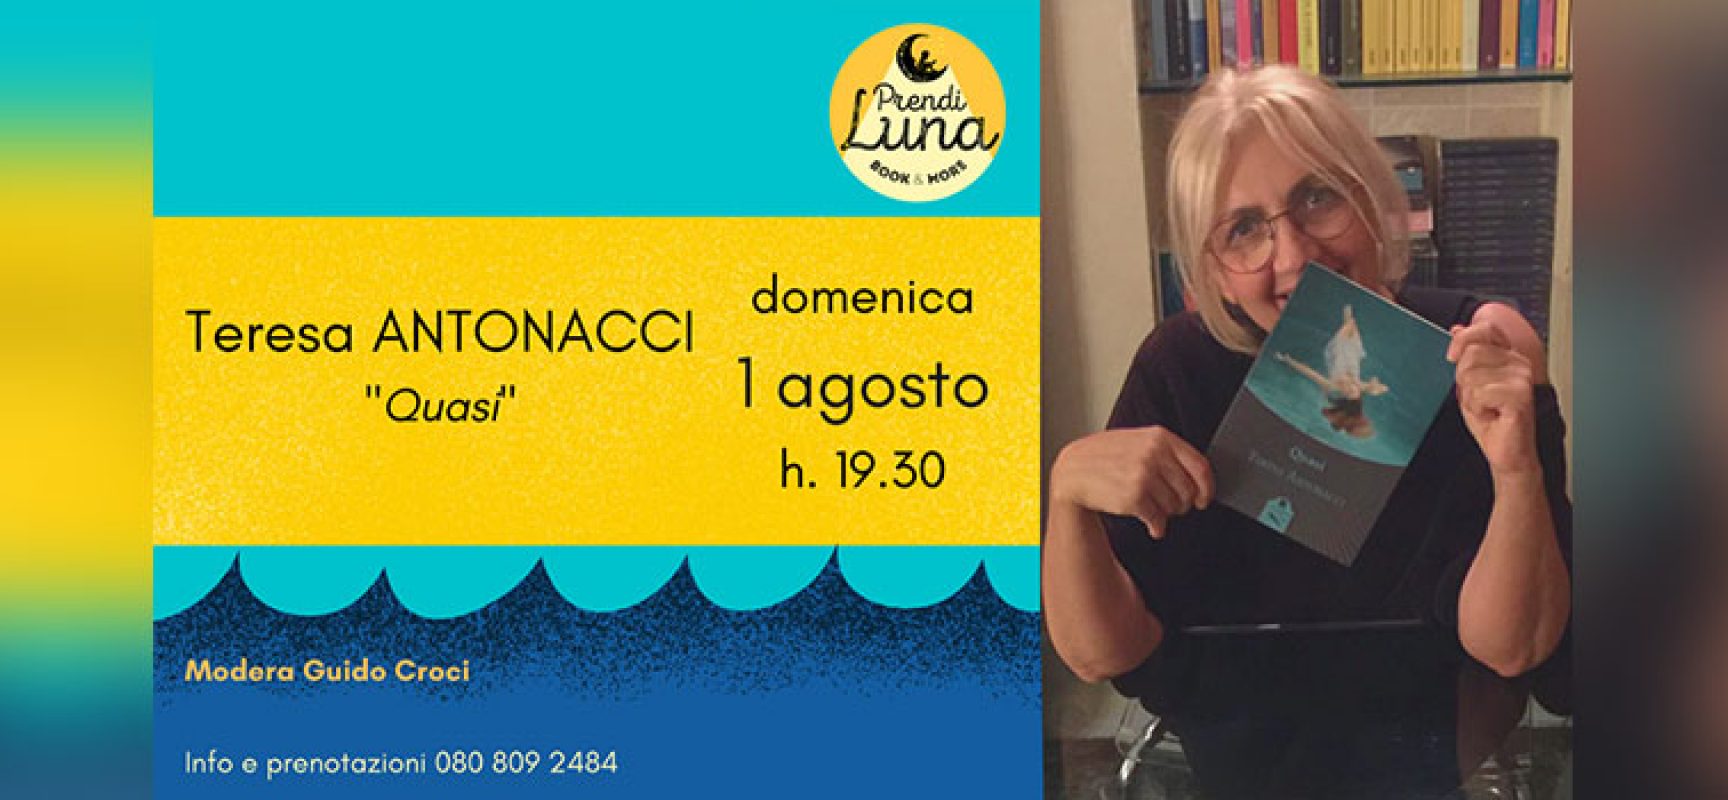 “Prendi Luna book & more”  ospita la scrittrice molfettese Teresa Antonacci